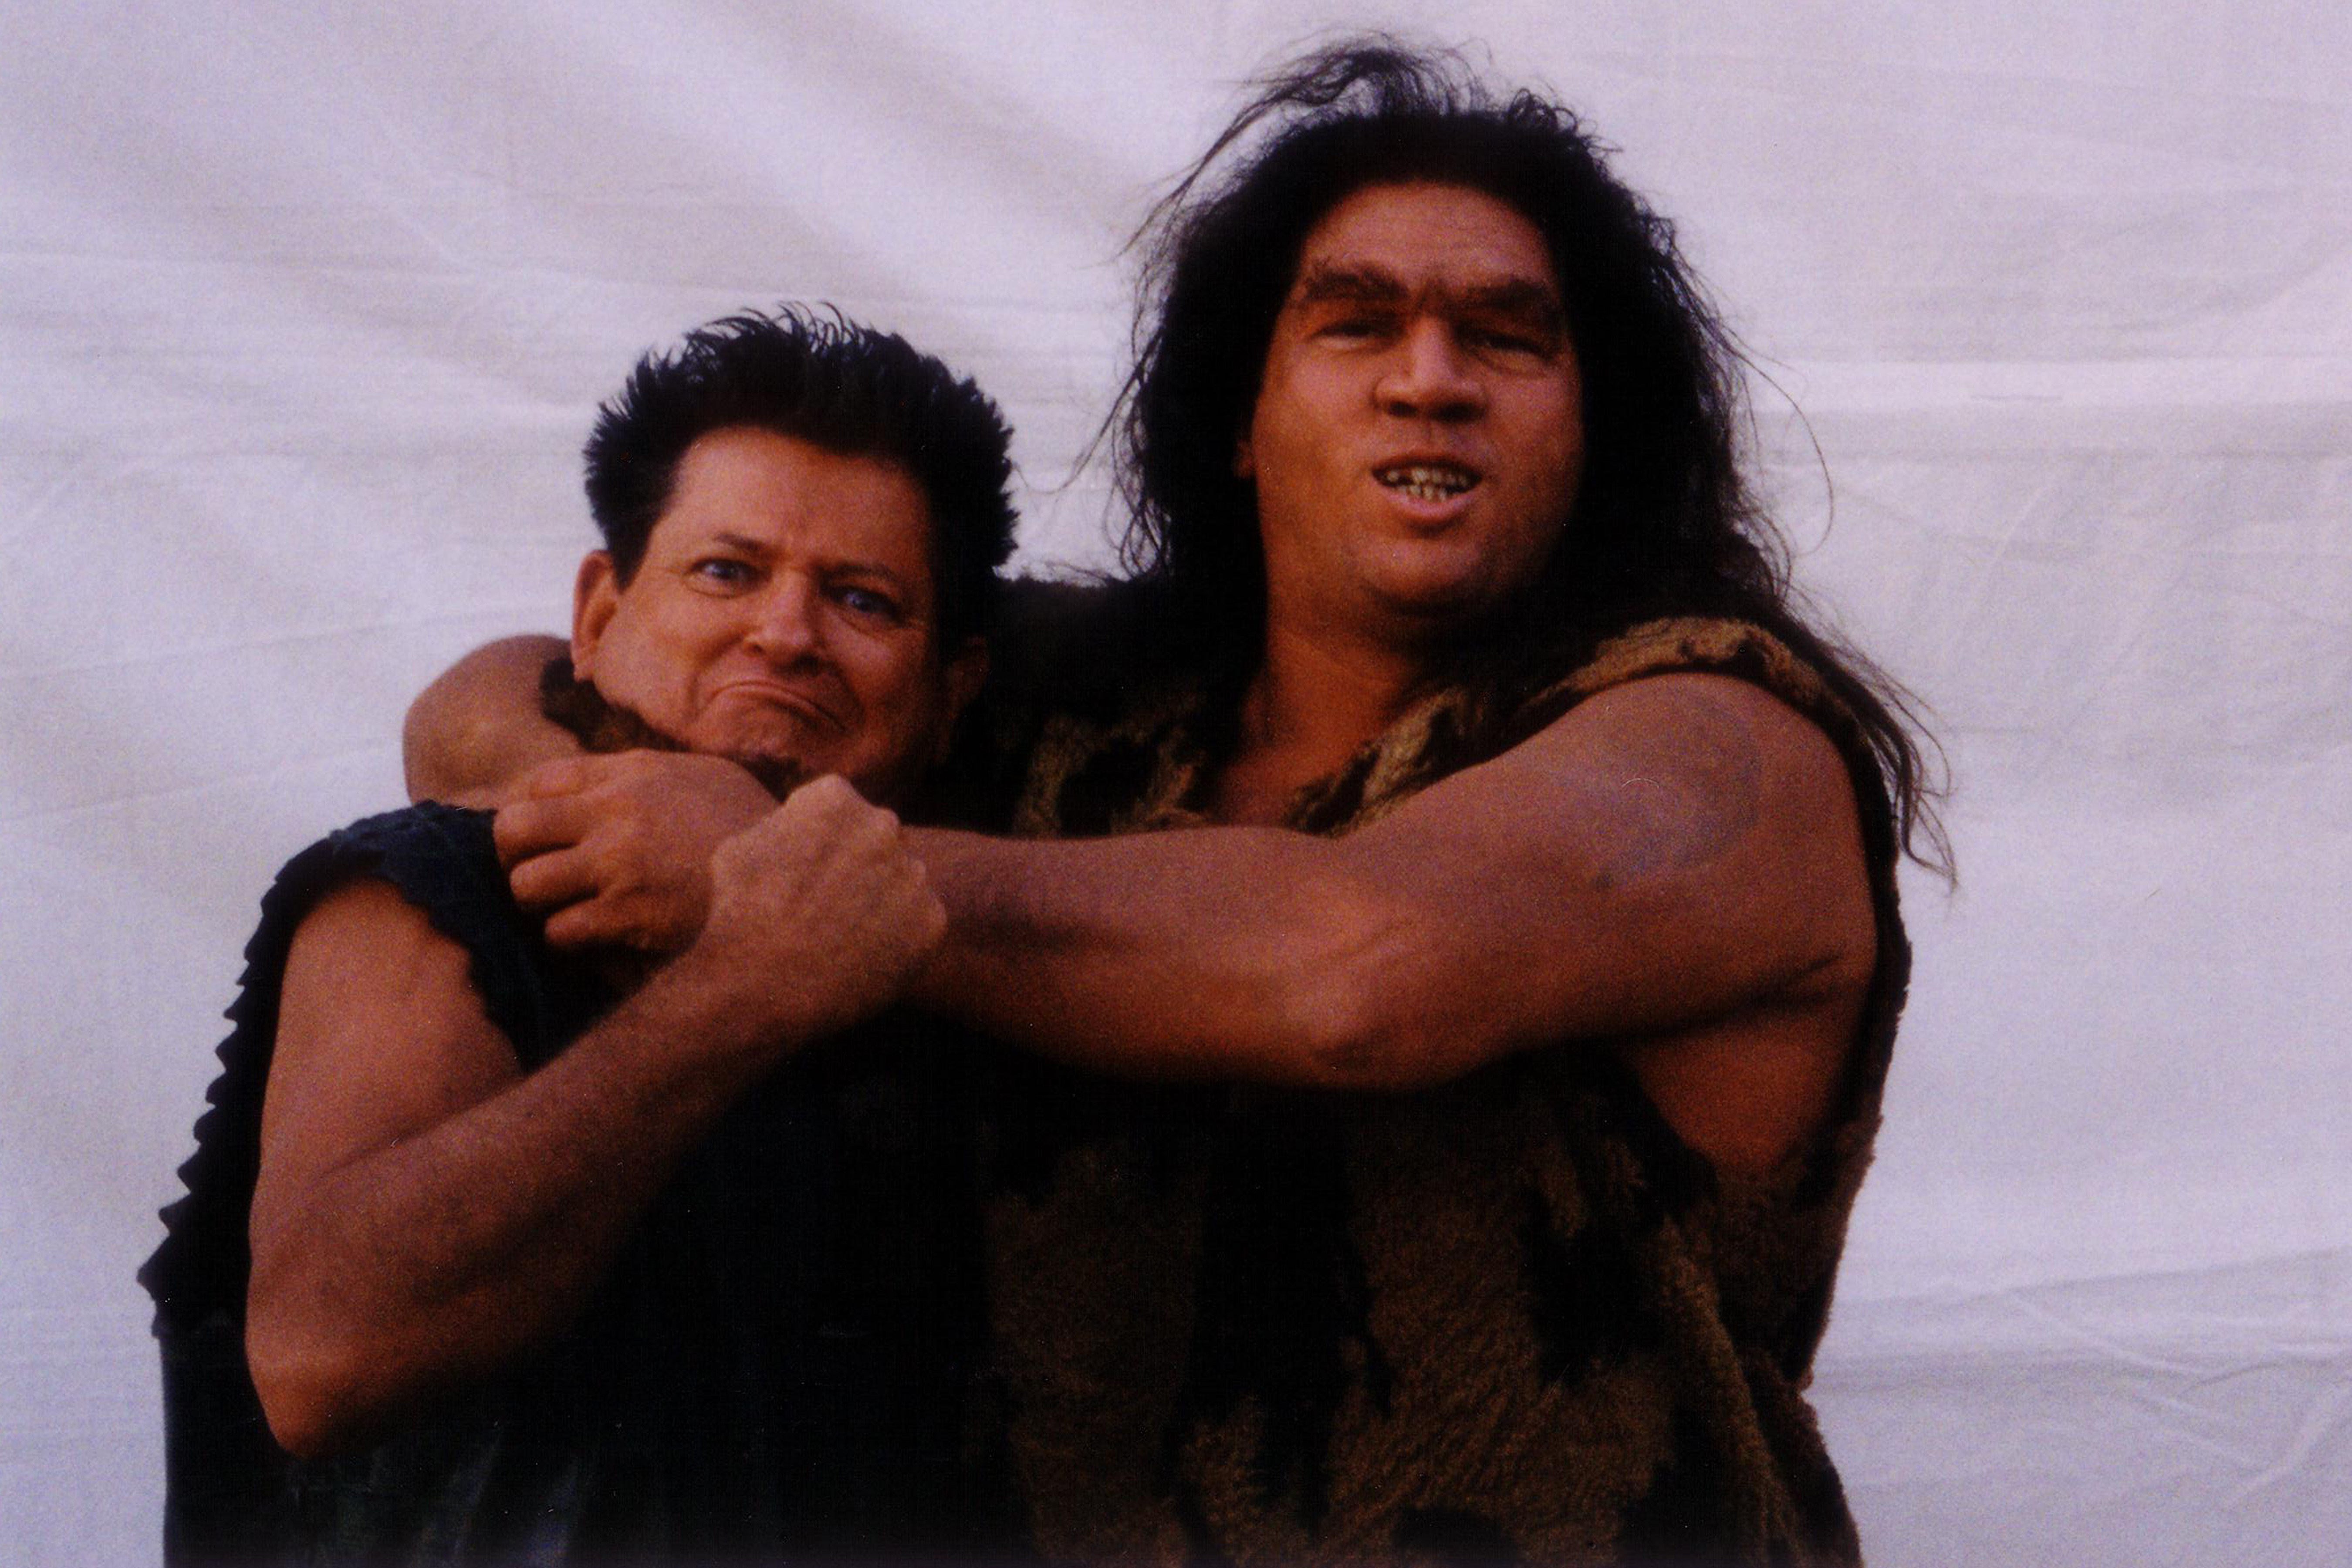 Seth as his Bronto King Patron character rough housing with one of the Neanderthals in the feature film The Flintstones in Viva Rock Vegas (2000)